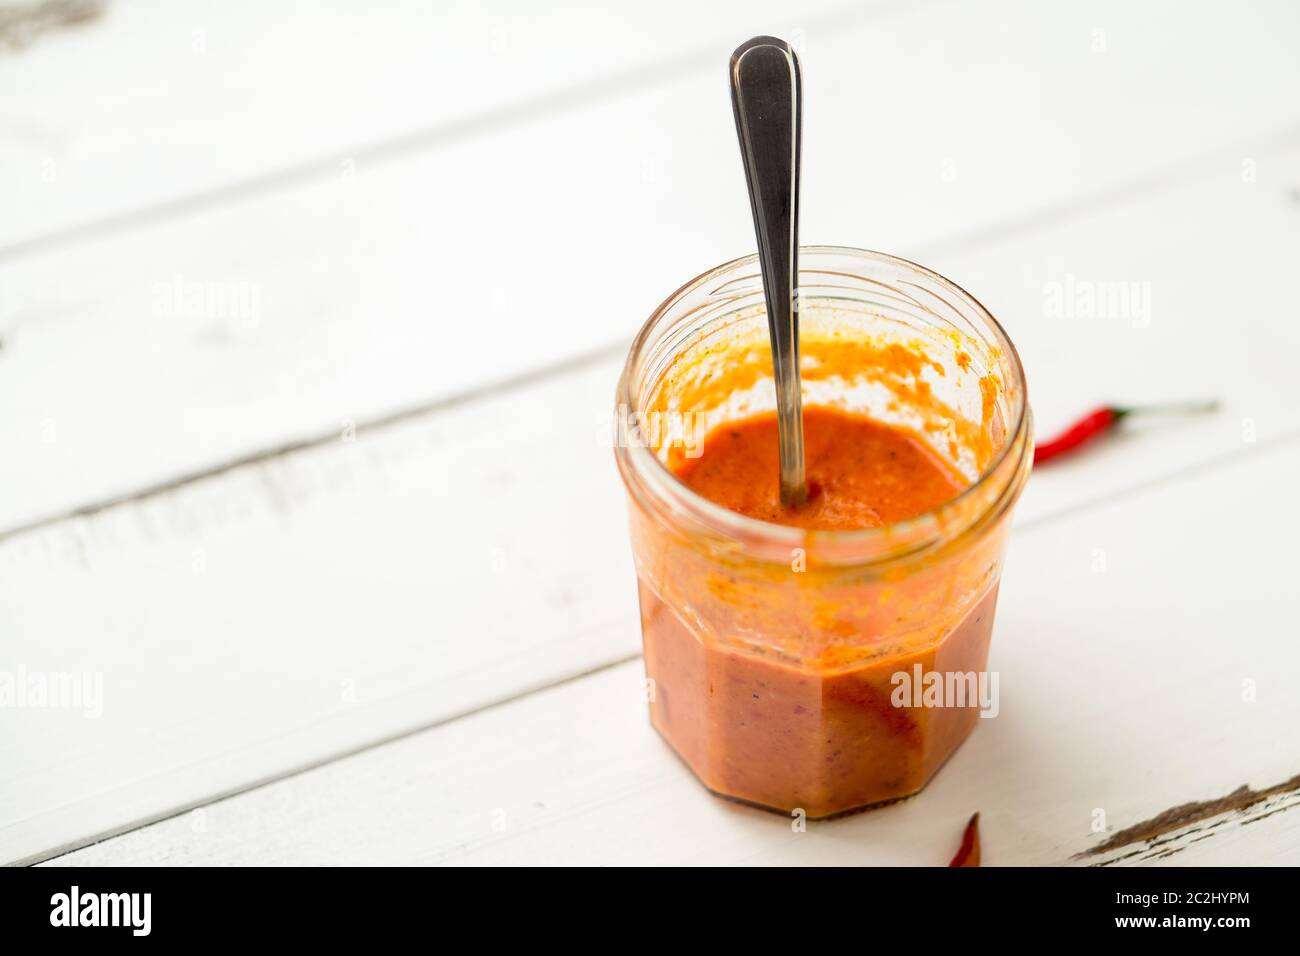 Piri Piri Sauce ist eine Art von Chili-Pfeffer-Sauce als Gewürz oder Marinade traditionell in der portugiesischen Küche verwendet. Hier in einem Glas gesehen. Stockfoto